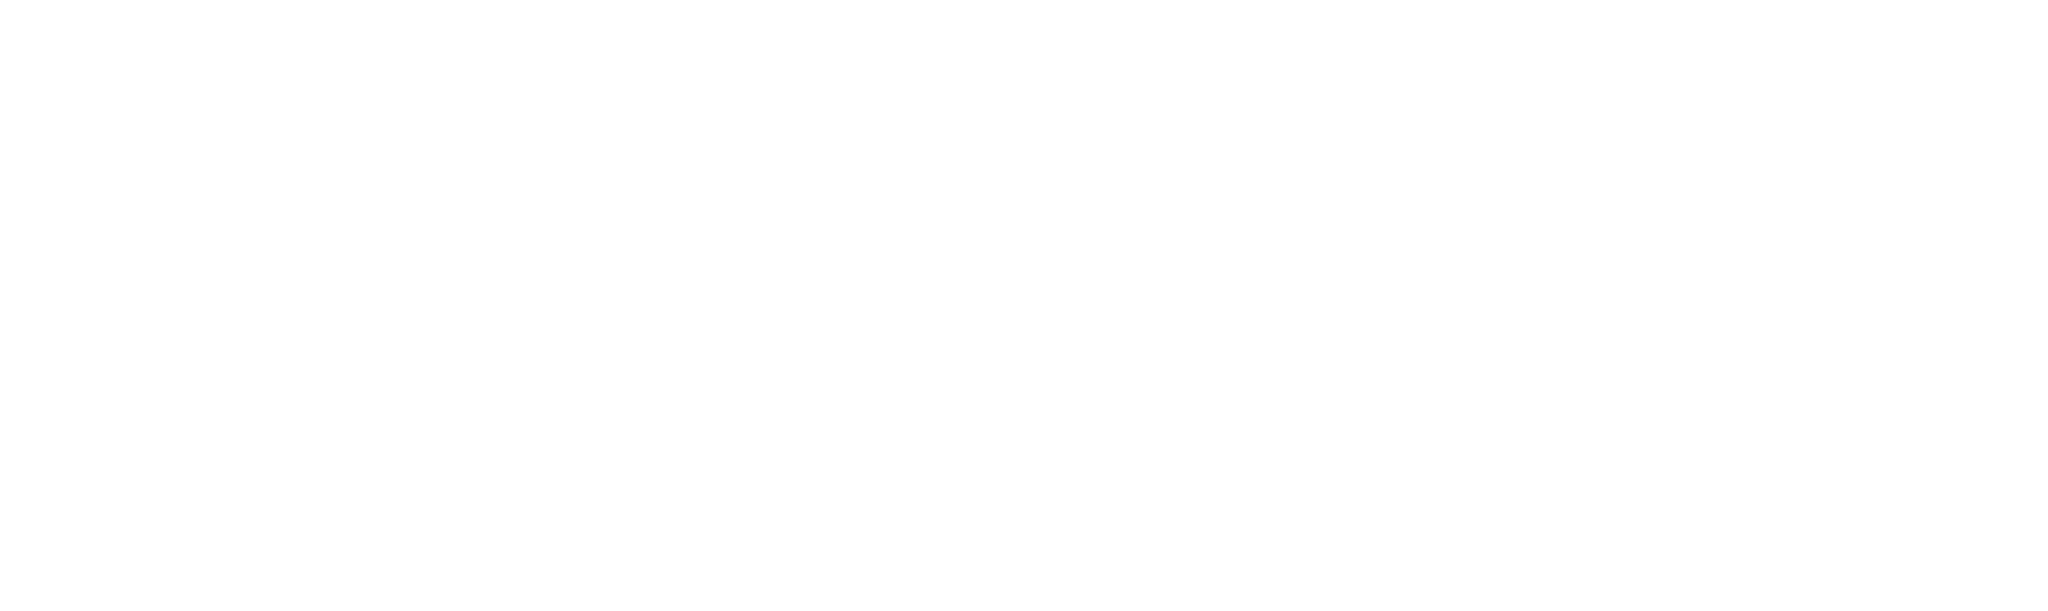 XStore - Brands you love